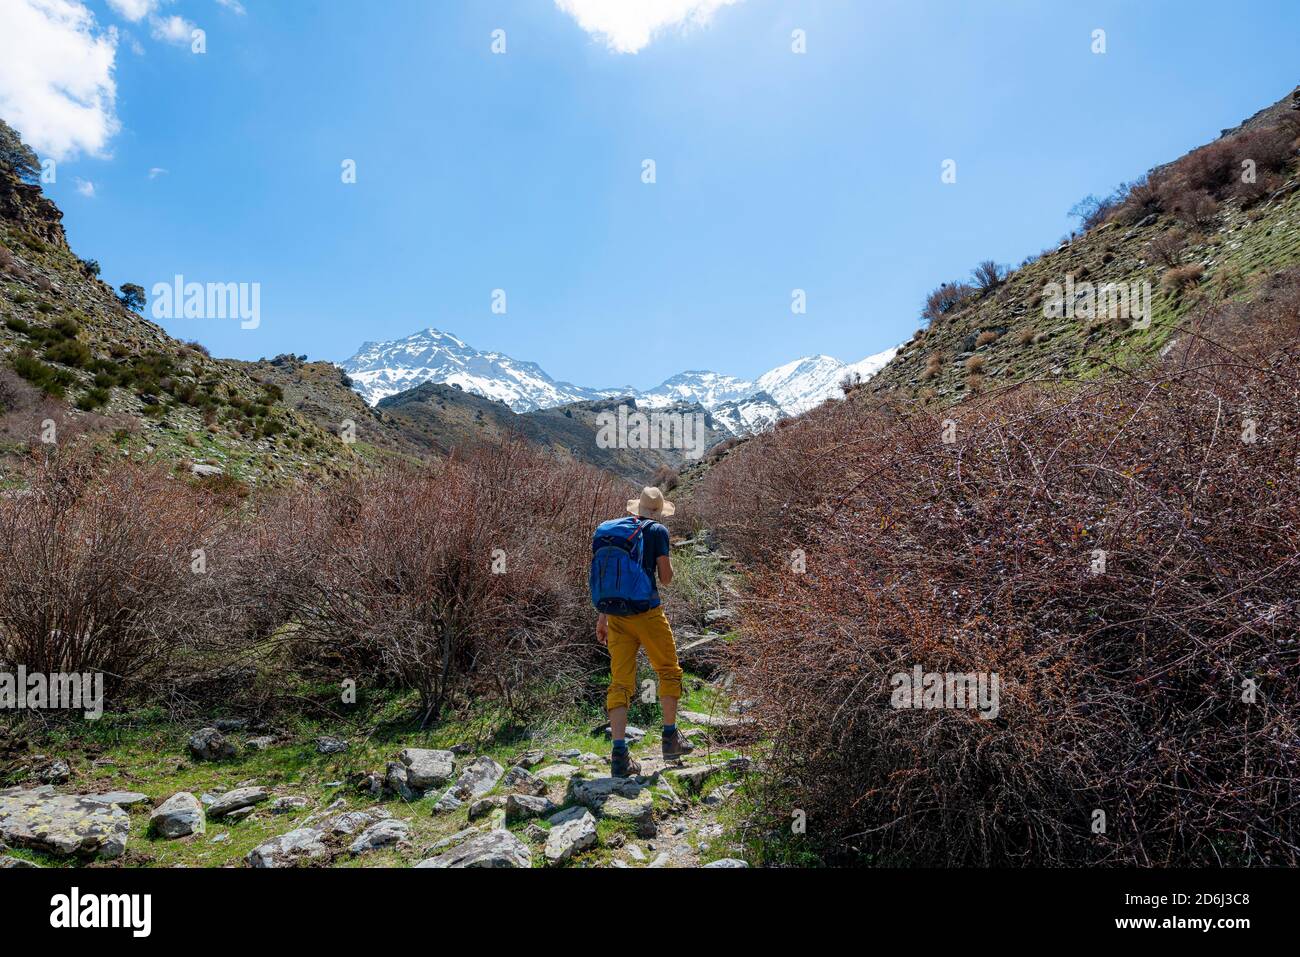 Randonnée sur un sentier de randonnée, sentier de randonnée Vereda de la Estrella près de Junta de los Rios, derrière la Sierra Nevada avec les sommets de Mulhacen et Pico Alcazaba Banque D'Images